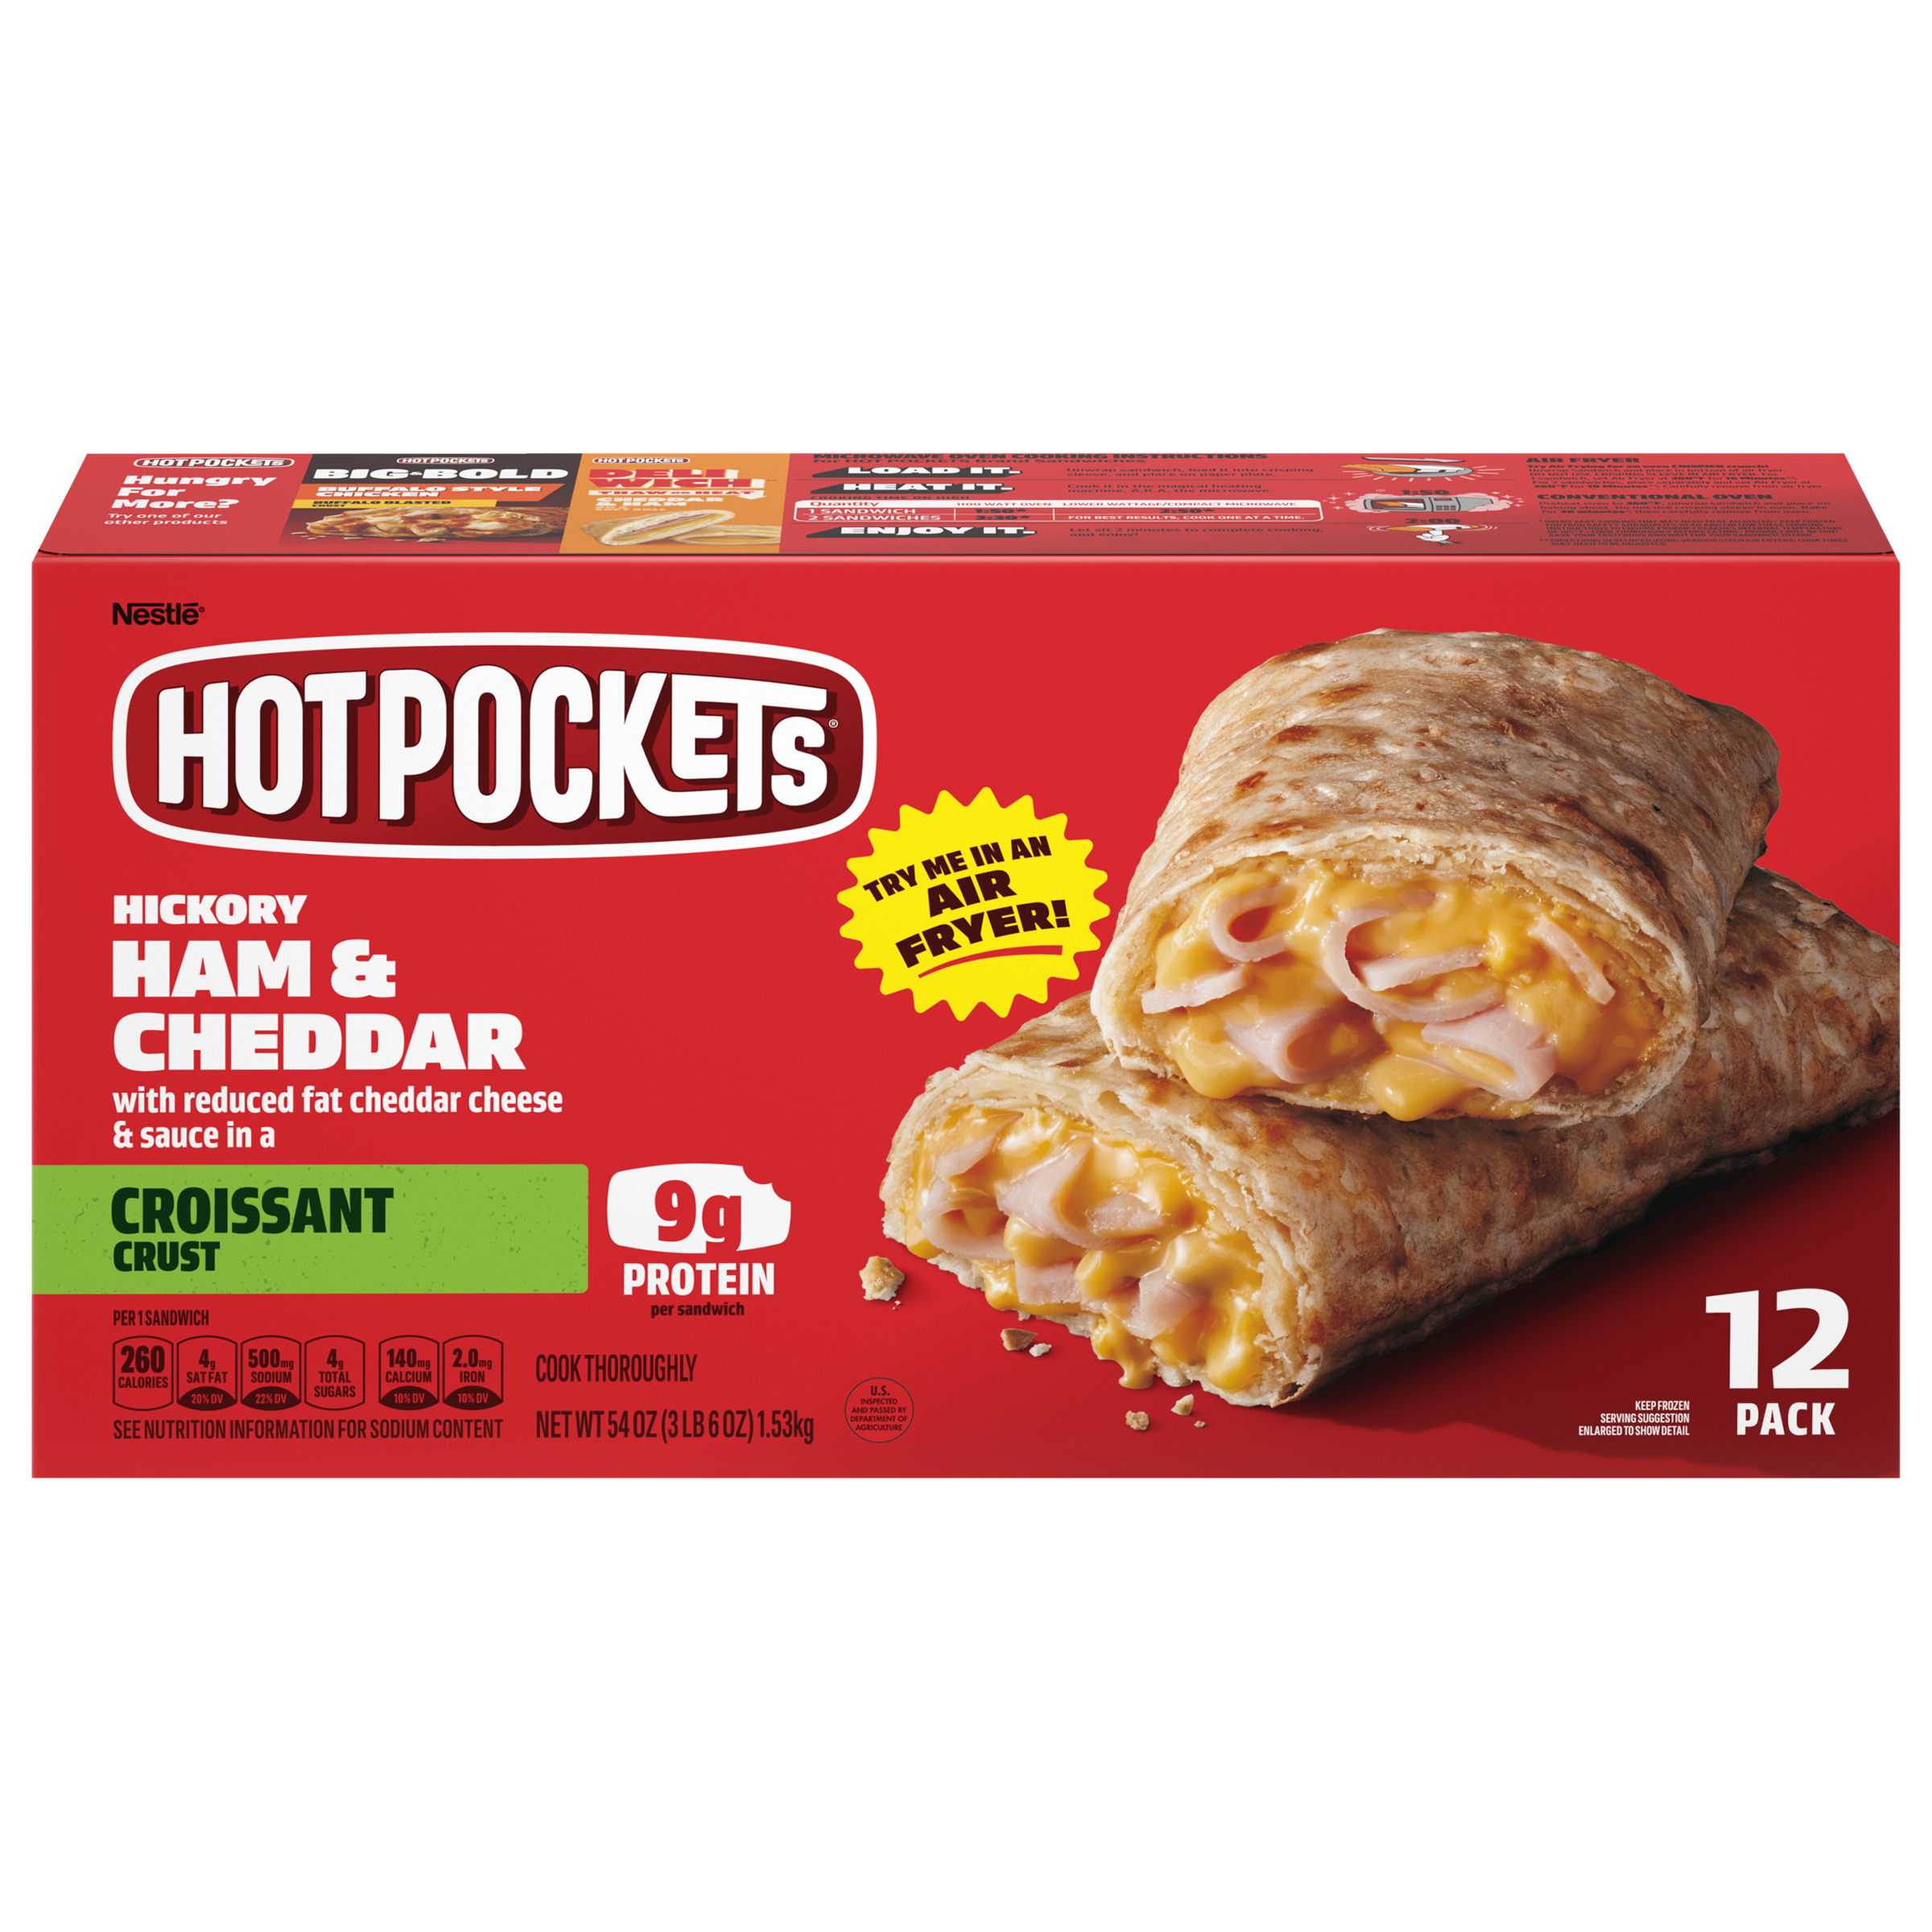 HOT POCKETS Croissant Crust Hickory Ham & Cheddar 4 units per case 54.0 oz